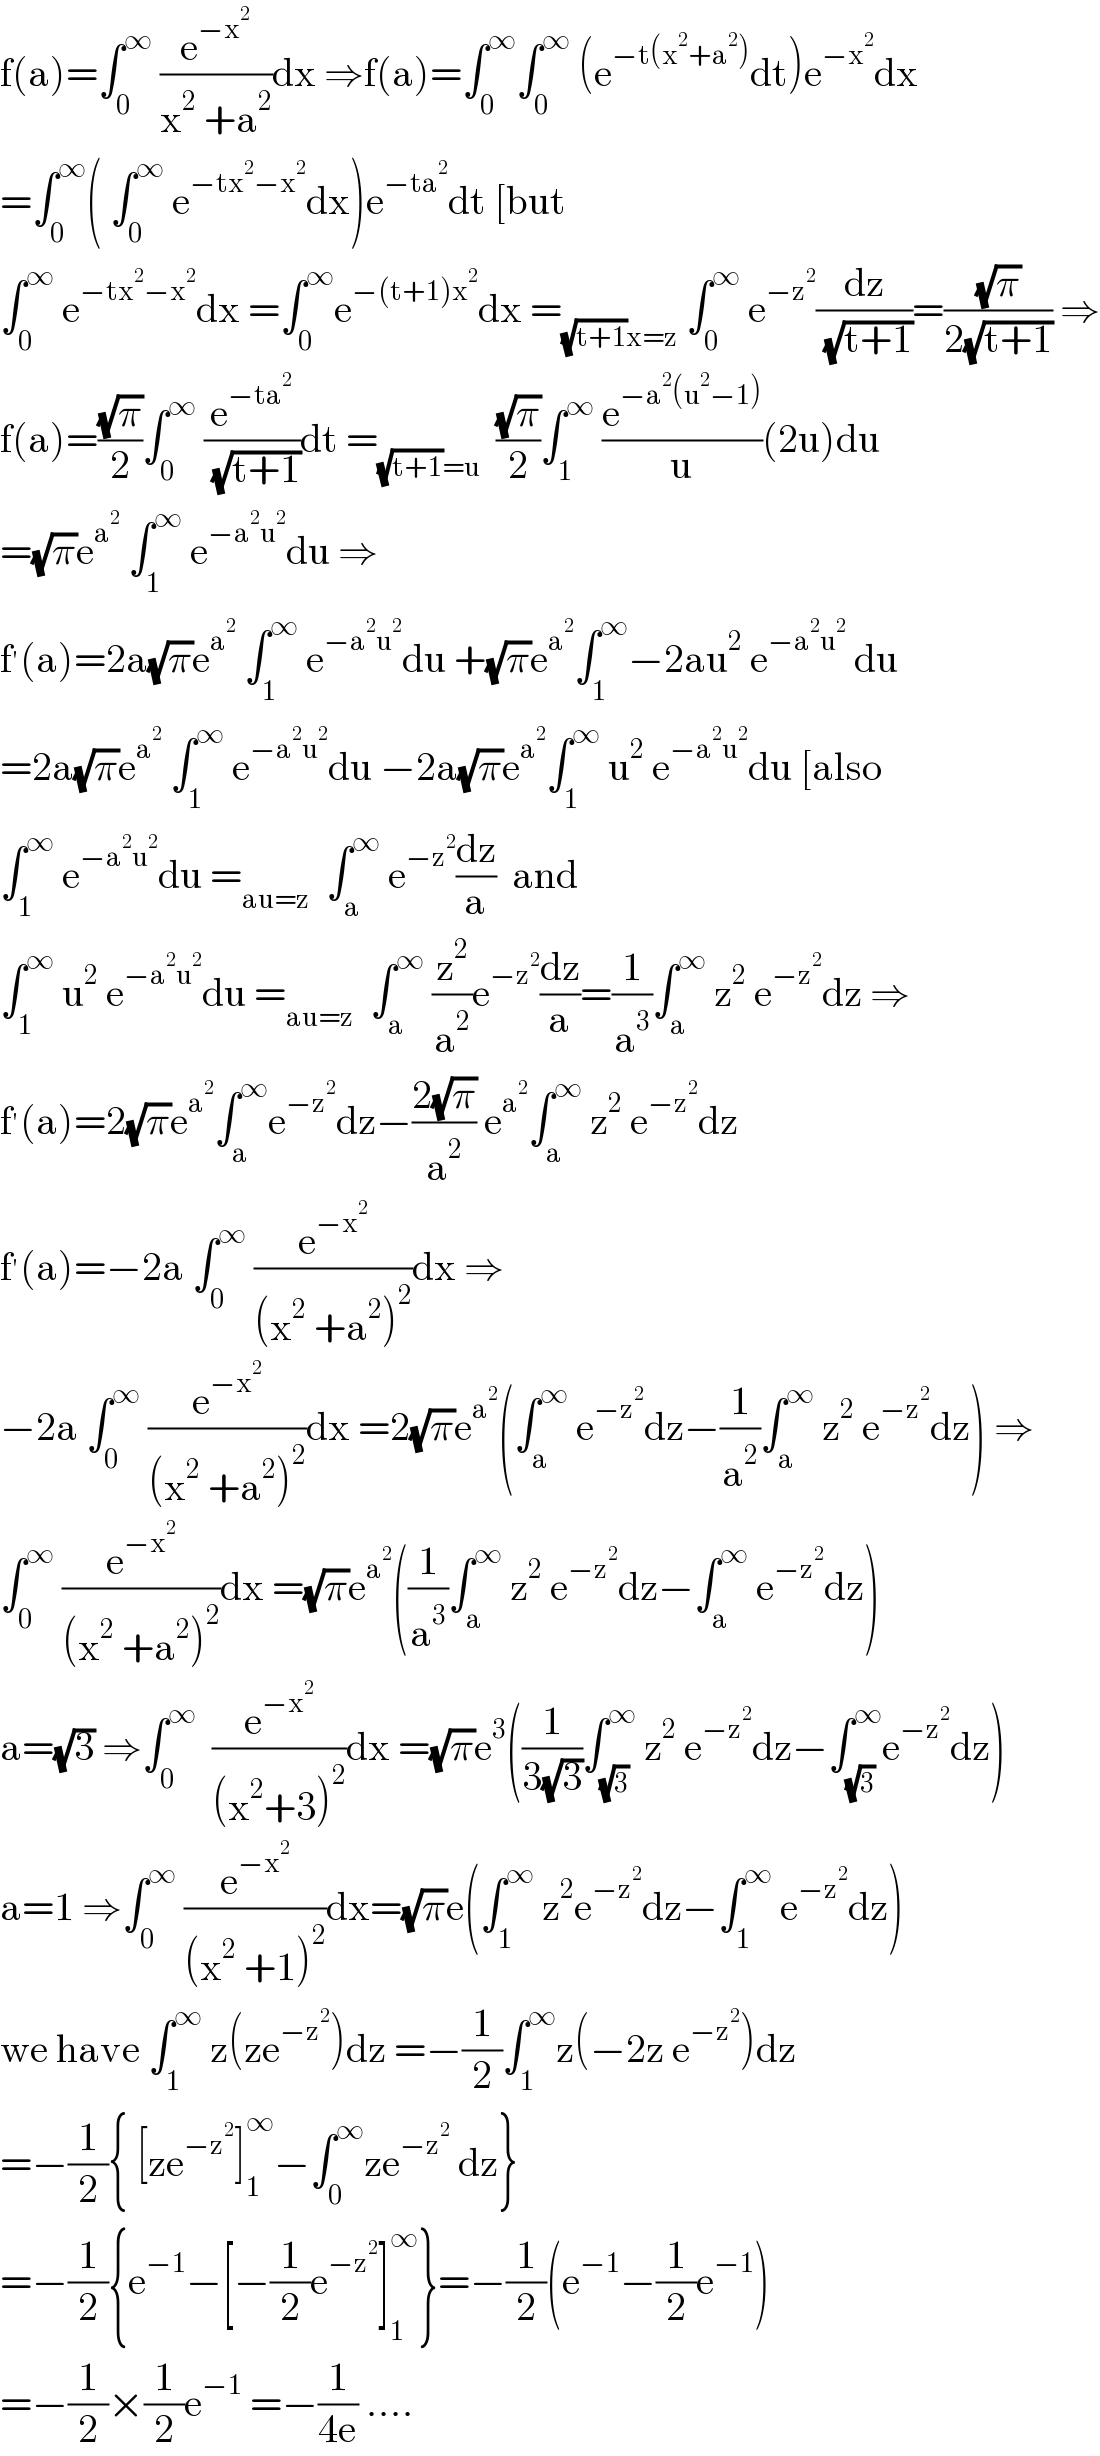 f(a)=∫_0 ^∞  (e^(−x^2 ) /(x^2  +a^2 ))dx ⇒f(a)=∫_0 ^∞ ∫_0 ^∞  (e^(−t(x^2 +a^2 )) dt)e^(−x^2 ) dx  =∫_0 ^∞ ( ∫_0 ^∞  e^(−tx^2 −x^2 ) dx)e^(−ta^2 ) dt [but  ∫_0 ^∞  e^(−tx^2 −x^2 ) dx =∫_0 ^∞ e^(−(t+1)x^2 ) dx =_((√(t+1))x=z)  ∫_0 ^∞  e^(−z^2 ) (dz/( (√(t+1))))=((√π)/(2(√(t+1)))) ⇒  f(a)=((√π)/2)∫_0 ^∞  (e^(−ta^2 ) /( (√(t+1))))dt =_((√(t+1))=u)   ((√π)/2)∫_1 ^∞  (e^(−a^2 (u^2 −1)) /u)(2u)du  =(√π)e^a^2   ∫_1 ^∞  e^(−a^2 u^2 ) du ⇒  f^′ (a)=2a(√π)e^a^2   ∫_1 ^∞  e^(−a^2 u^2 ) du +(√π)e^a^2  ∫_1 ^∞ −2au^2  e^(−a^2 u^2 )  du  =2a(√π)e^a^2   ∫_1 ^∞  e^(−a^2 u^2 ) du −2a(√π)e^a^2  ∫_1 ^∞  u^2  e^(−a^2 u^2 ) du [also  ∫_1 ^∞  e^(−a^2 u^2 ) du =_(au=z)   ∫_a ^∞  e^(−z^2 ) (dz/a)  and  ∫_1 ^∞  u^2  e^(−a^2 u^2 ) du =_(au=z)   ∫_a ^∞  (z^2 /a^2 )e^(−z^2 ) (dz/a)=(1/a^3 )∫_a ^∞  z^2  e^(−z^2 ) dz ⇒  f^′ (a)=2(√π)e^a^2  ∫_a ^∞ e^(−z^2 ) dz−((2(√π))/a^2 ) e^a^2  ∫_a ^∞  z^2  e^(−z^2 ) dz  f^′ (a)=−2a ∫_0 ^∞  (e^(−x^2 ) /((x^2  +a^2 )^2 ))dx ⇒  −2a ∫_0 ^∞  (e^(−x^2 ) /((x^2  +a^2 )^2 ))dx =2(√π)e^a^2  (∫_a ^∞  e^(−z^2 ) dz−(1/a^2 )∫_a ^∞  z^2  e^(−z^2 ) dz) ⇒  ∫_0 ^∞  (e^(−x^2 ) /((x^2  +a^2 )^2 ))dx =(√π)e^a^2  ((1/a^3 )∫_a ^∞  z^2  e^(−z^2 ) dz−∫_a ^∞  e^(−z^2 ) dz)  a=(√3) ⇒∫_0 ^∞   (e^(−x^2 ) /((x^2 +3)^2 ))dx =(√π)e^3 ((1/(3(√3)))∫_(√3) ^∞  z^2  e^(−z^2 ) dz−∫_(√3) ^∞ e^(−z^2 ) dz)  a=1 ⇒∫_0 ^∞  (e^(−x^2 ) /((x^2  +1)^2 ))dx=(√π)e(∫_1 ^∞  z^2 e^(−z^2 ) dz−∫_1 ^∞  e^(−z^2 ) dz)  we have ∫_1 ^∞  z(ze^(−z^2 ) )dz =−(1/2)∫_1 ^∞ z(−2z e^(−z^2 ) )dz  =−(1/2){ [ze^(−z^2 ) ]_1 ^∞ −∫_0 ^∞ ze^(−z^2 )  dz}  =−(1/2){e^(−1) −[−(1/2)e^(−z^2 ) ]_1 ^∞ }=−(1/2)(e^(−1) −(1/2)e^(−1) )  =−(1/2)×(1/2)e^(−1)  =−(1/(4e)) ....  